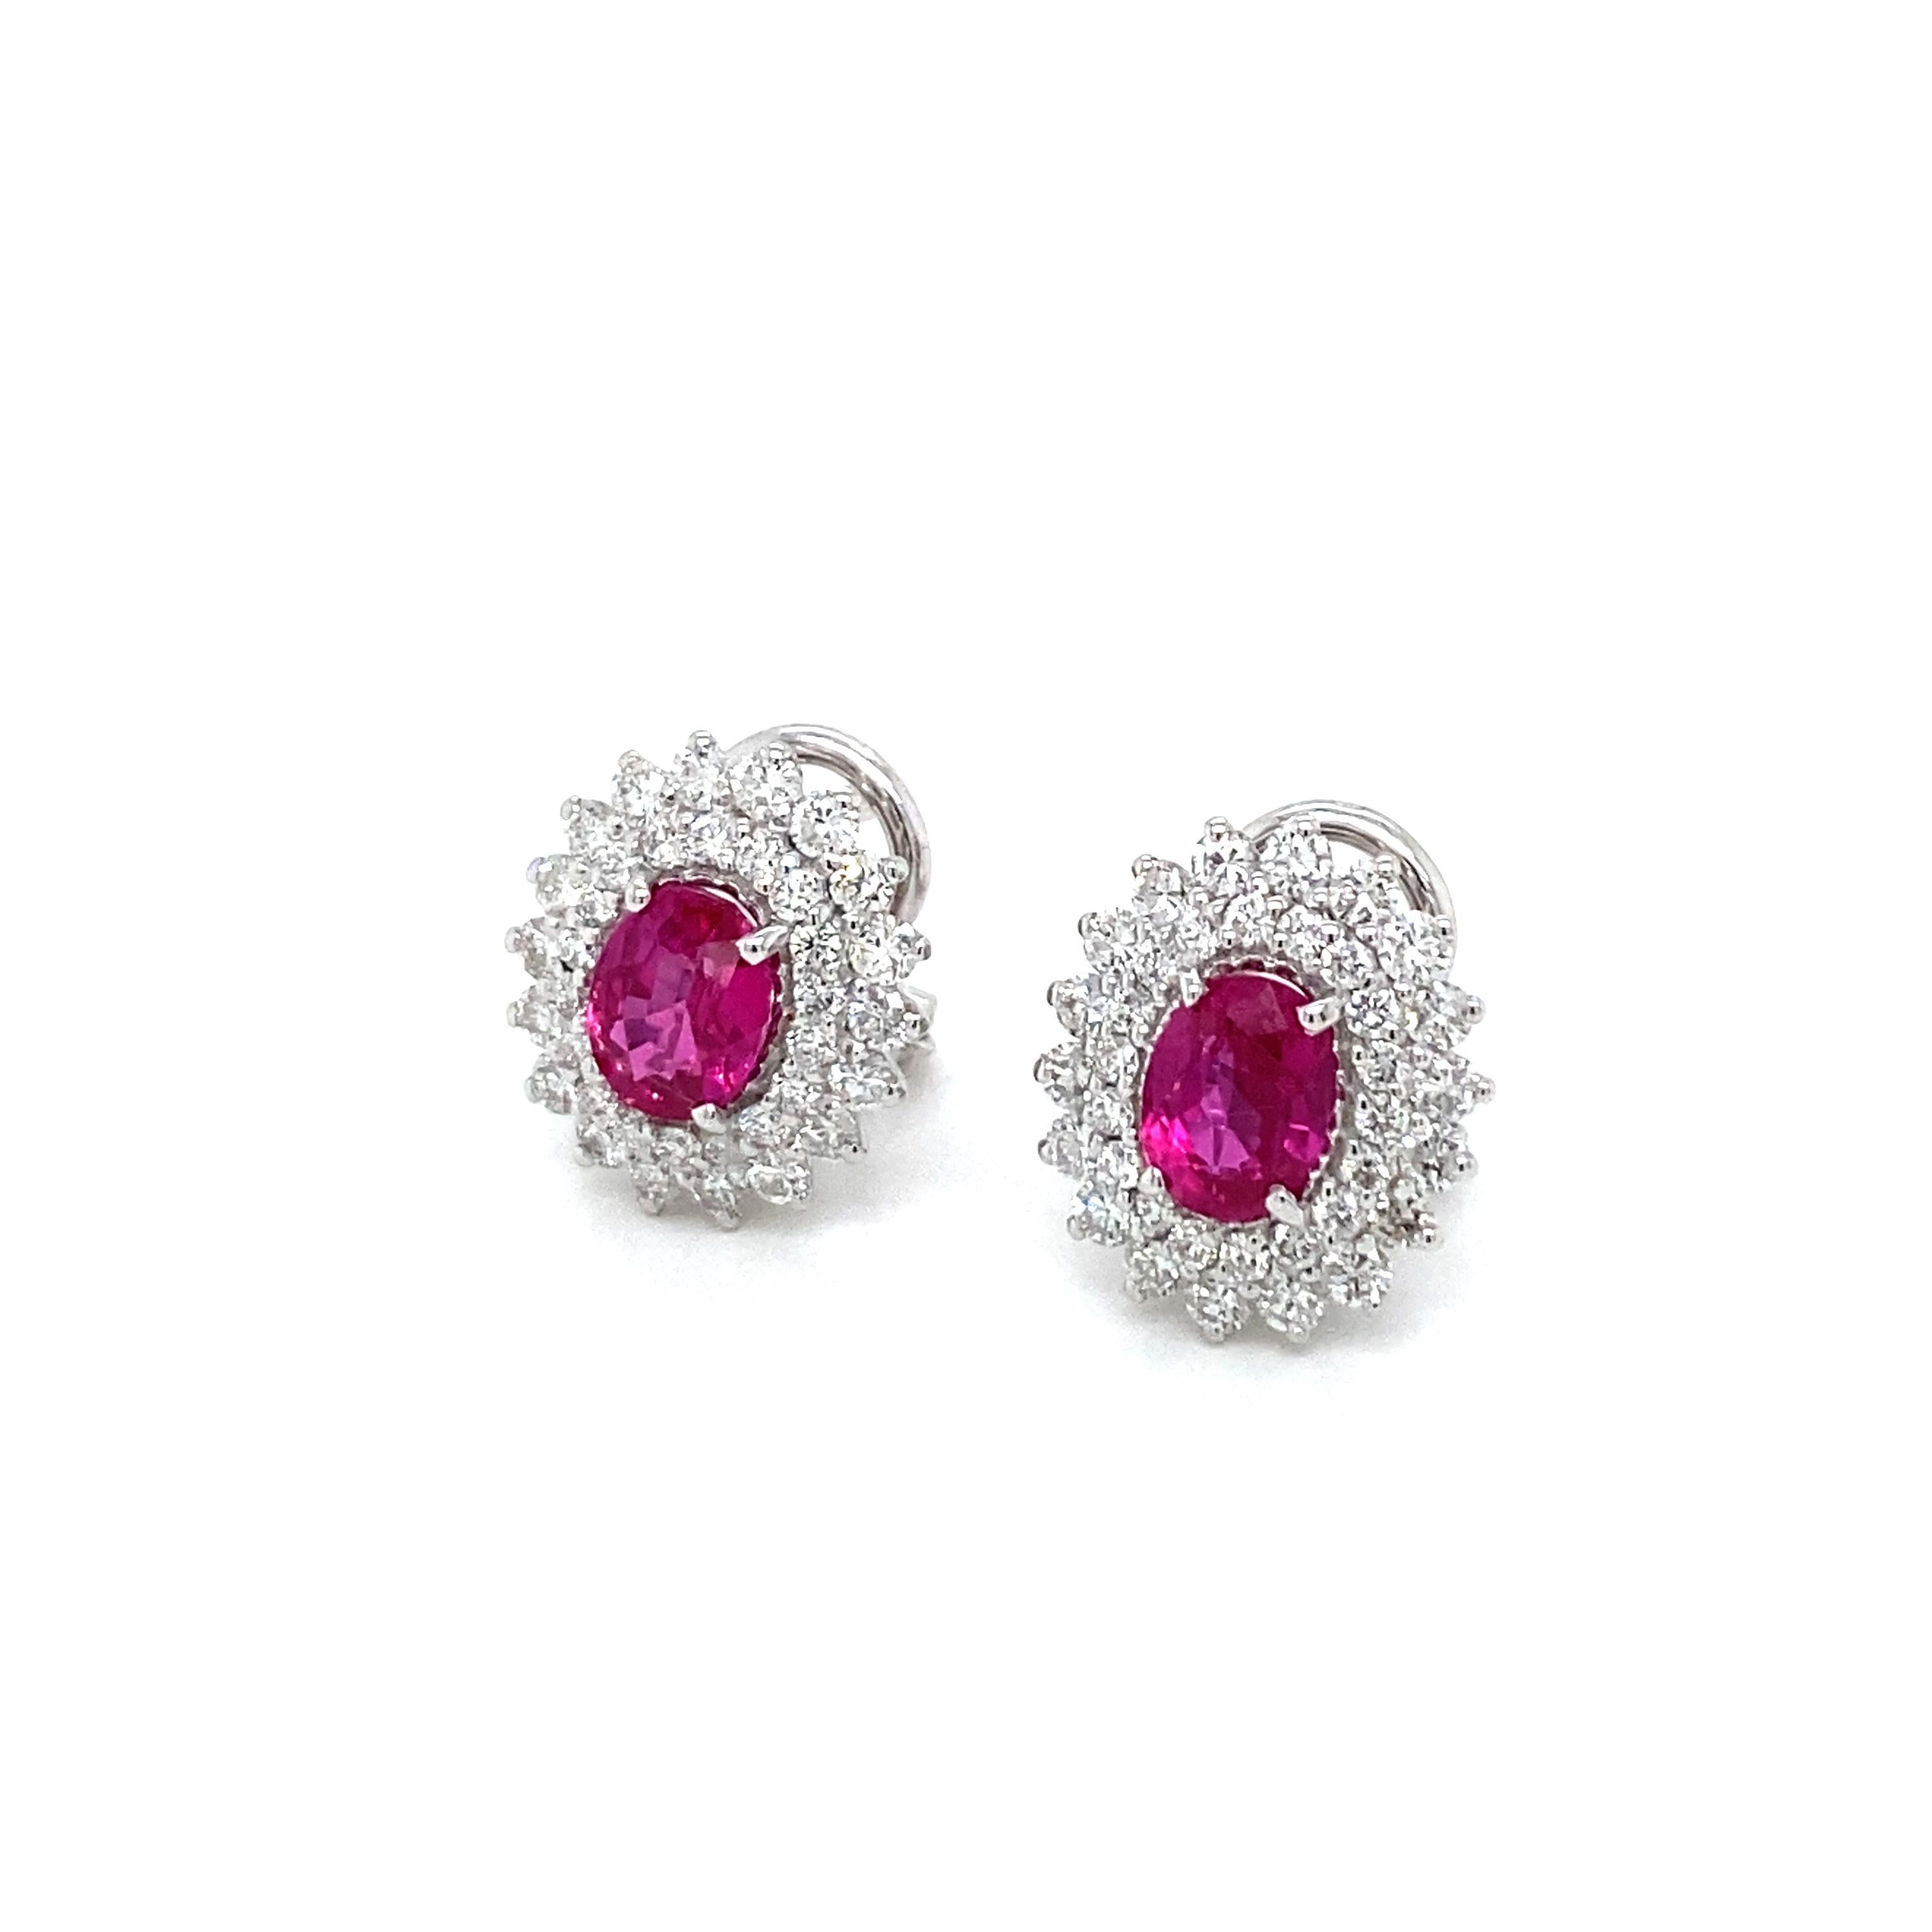 2 carat oval diamond earrings